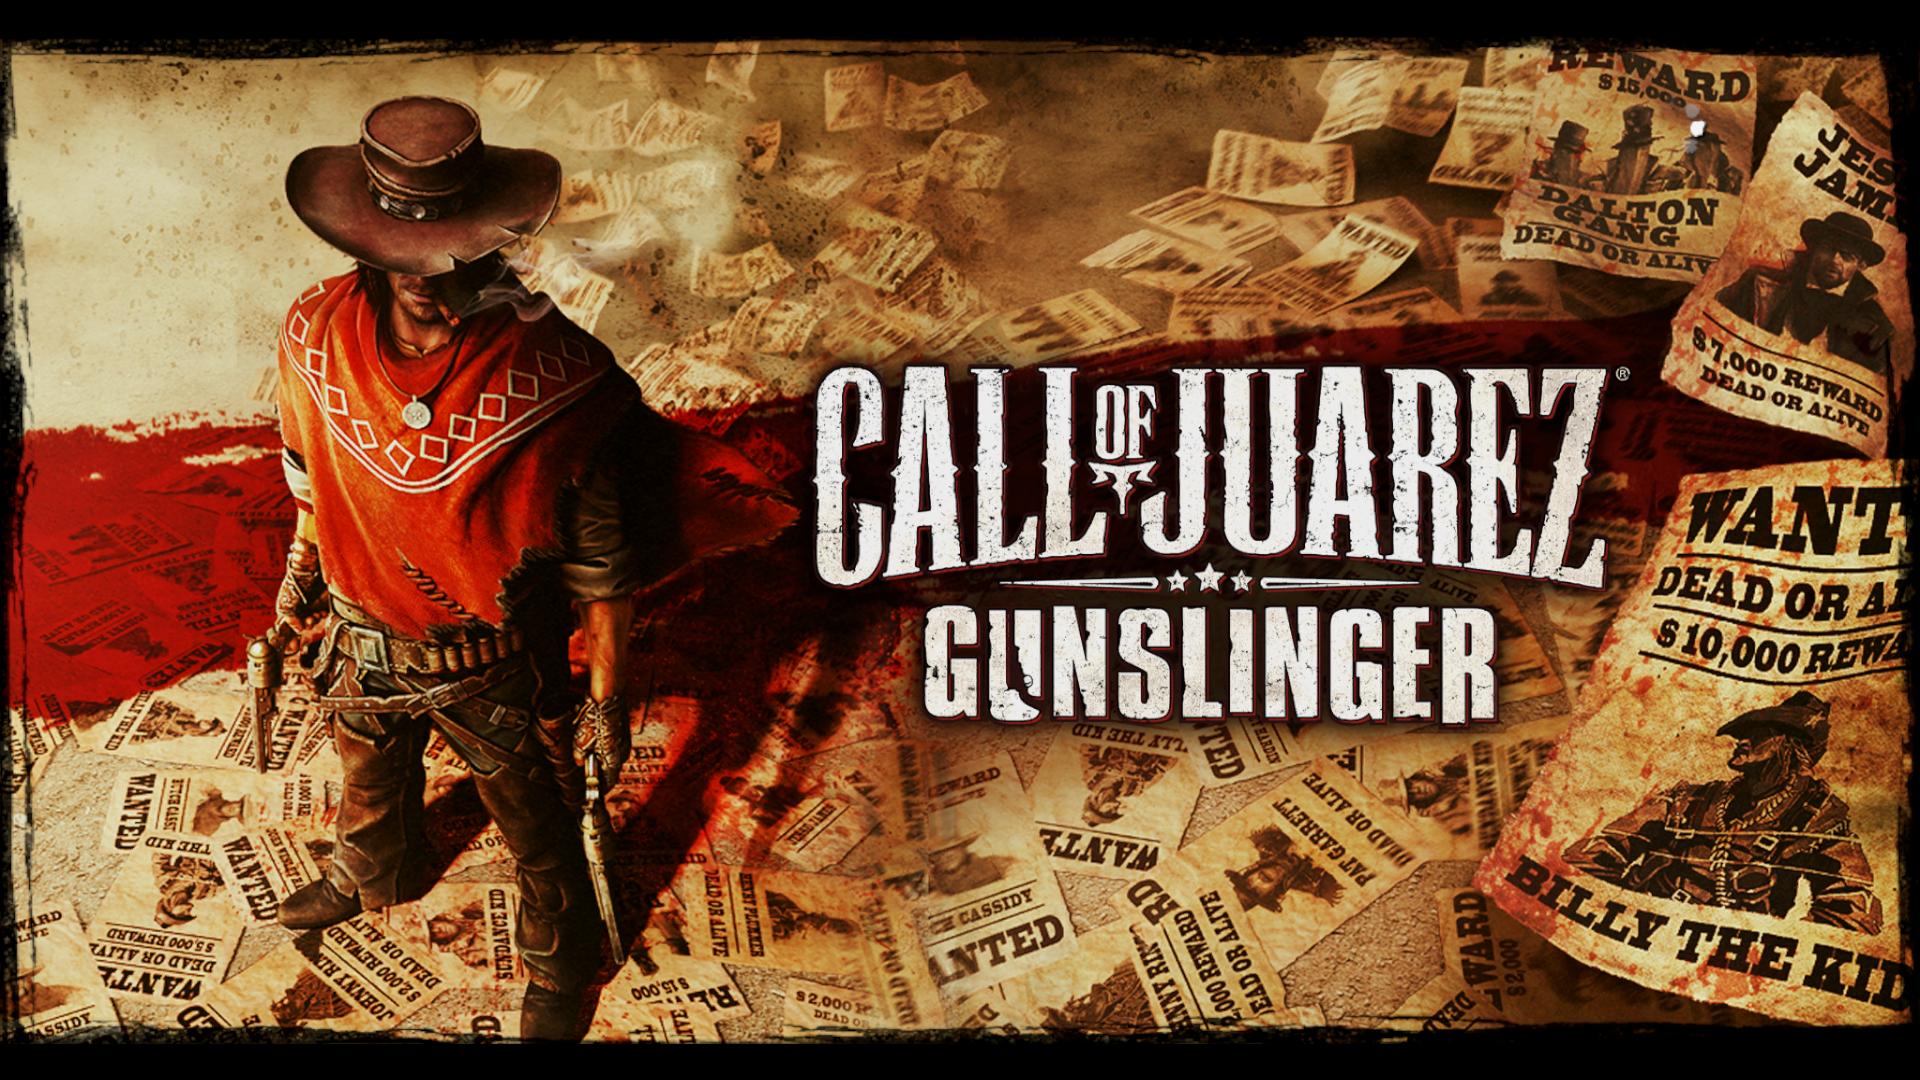  CALL OF JUAREZ GUNSLINGER PC - CoJGunslinger 2013-05-22 20-38-26-48.jpg